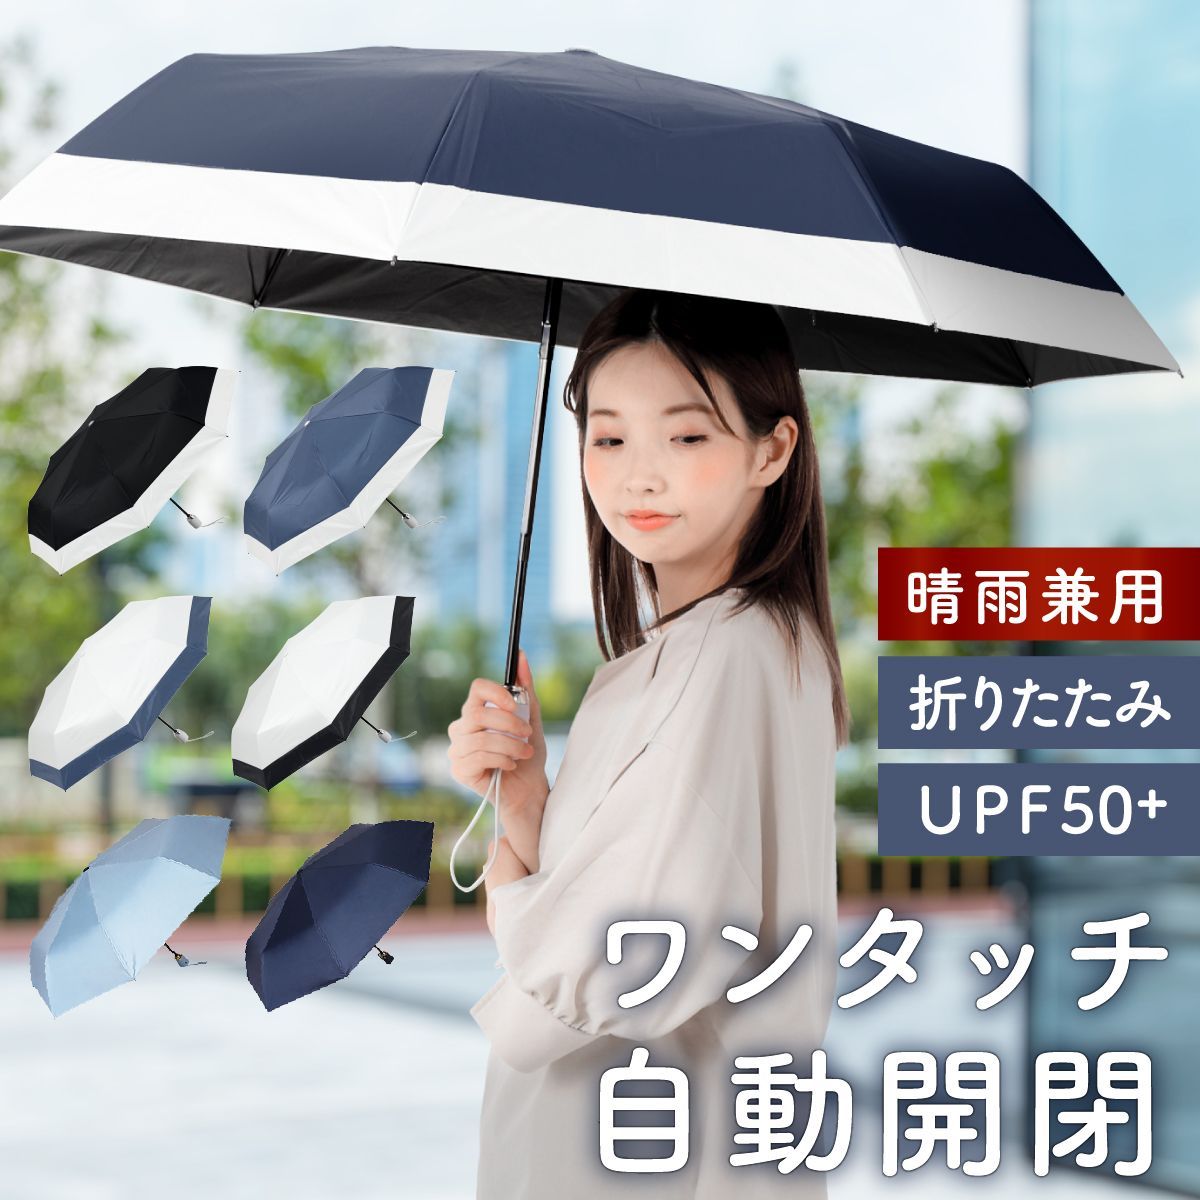 新品折りたたみ傘 - 小物